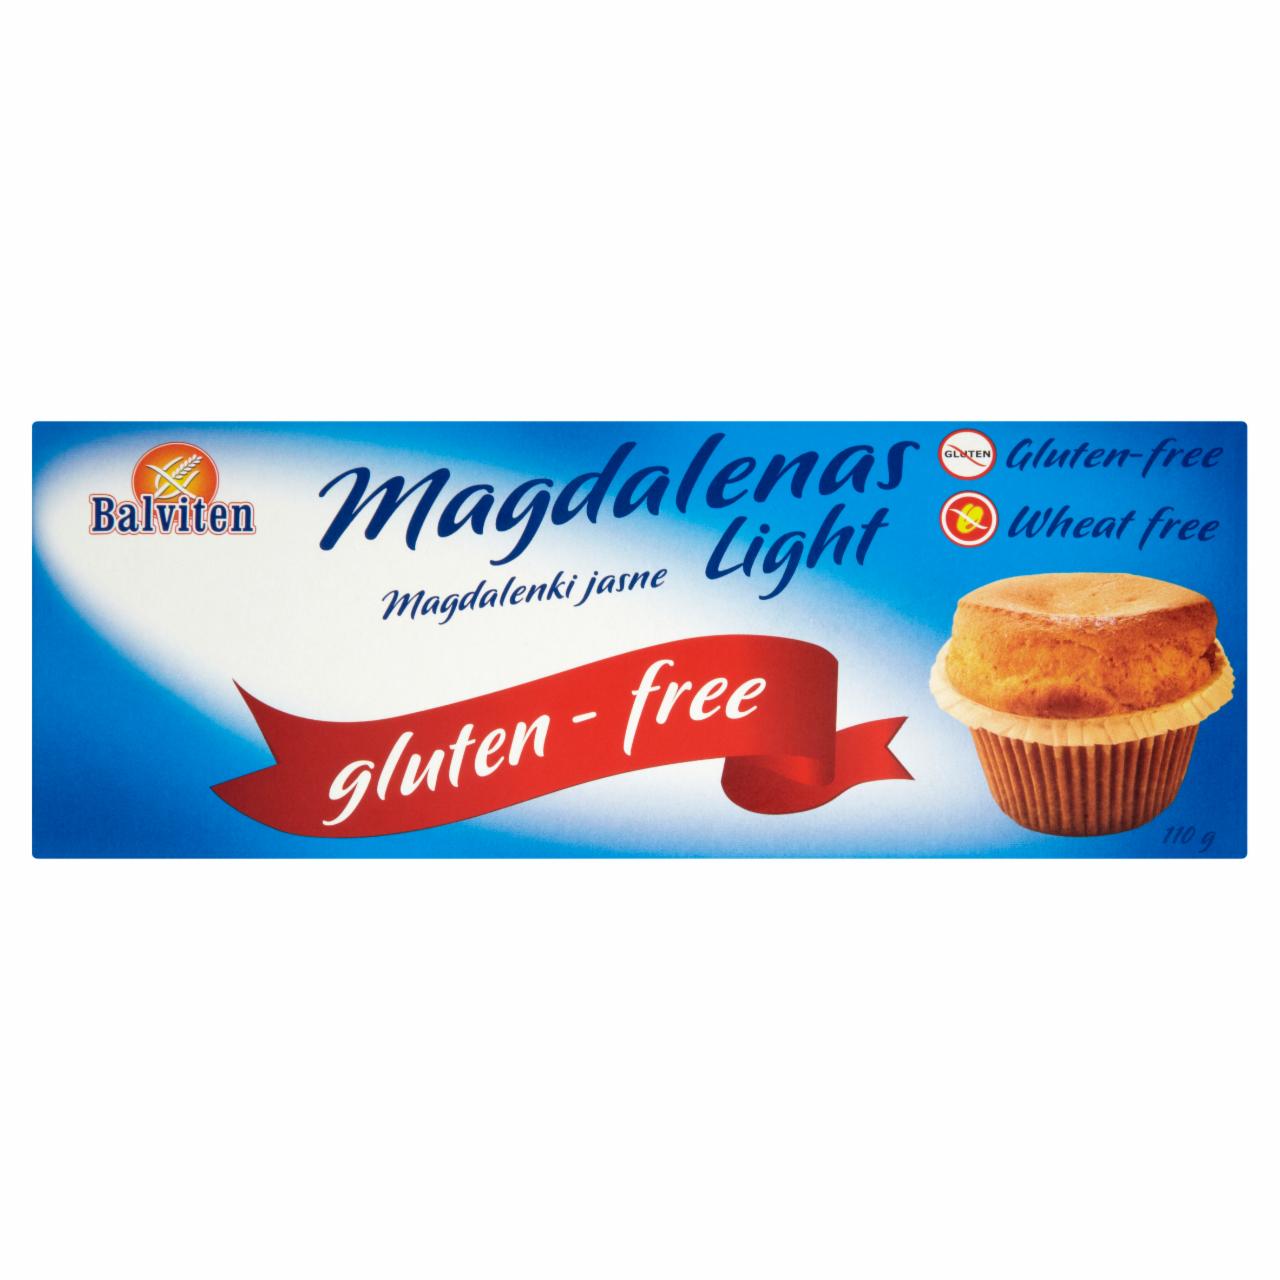 Photo - Balviten Magdalenas Light Muffins 110 g